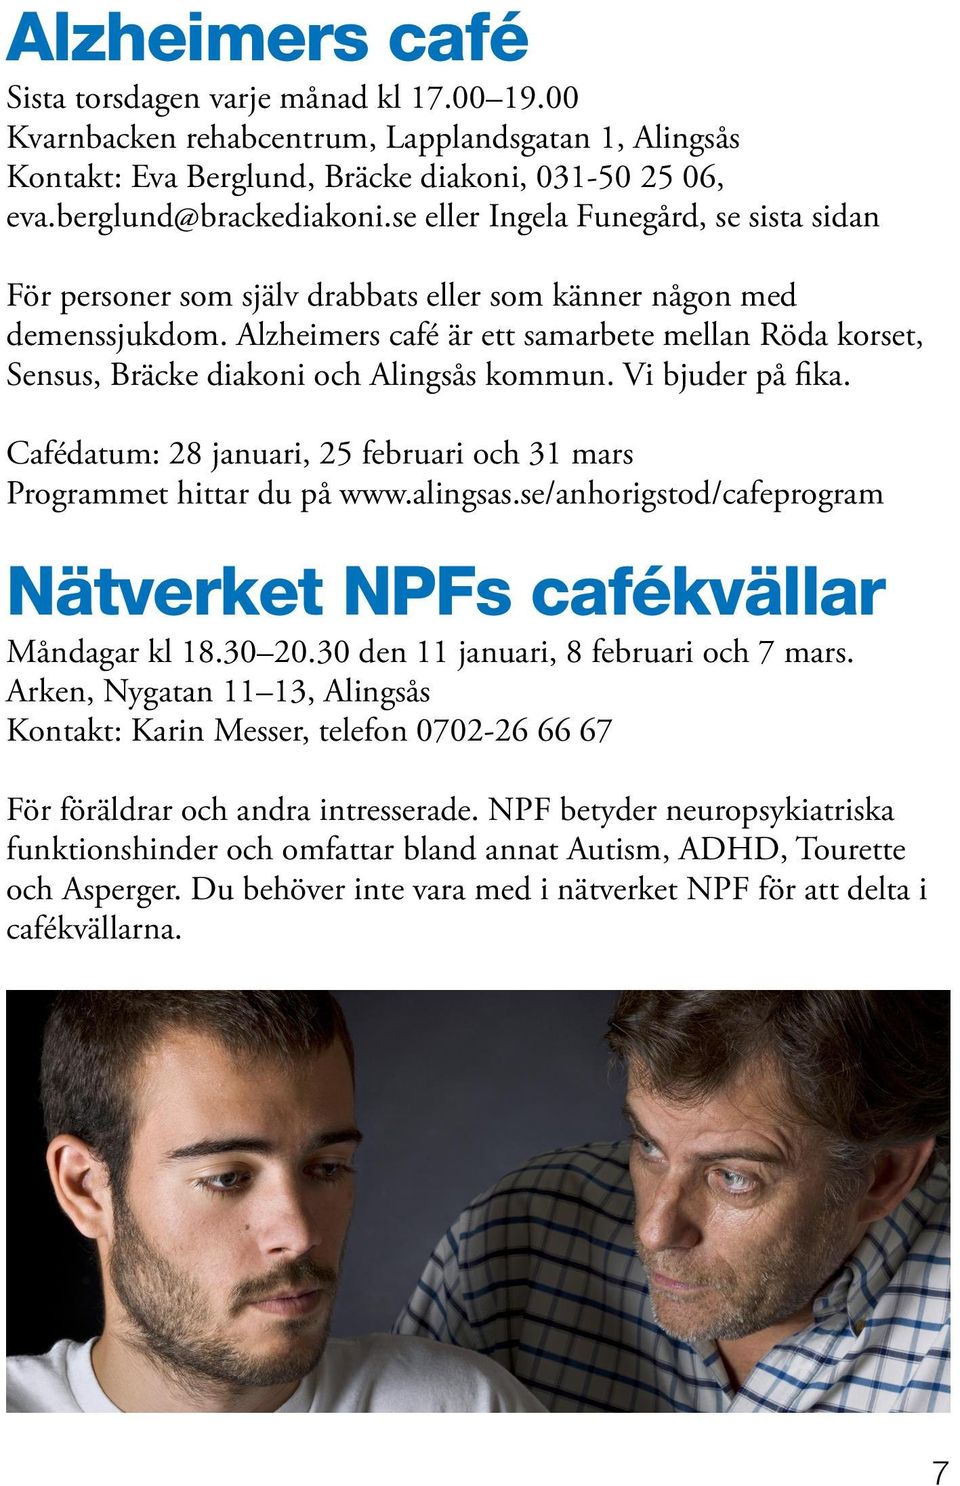 Alzheimers café är ett samarbete mellan Röda korset, Sensus, Bräcke diakoni och Alingsås kommun. Vi bjuder på fika. Cafédatum: 28 januari, 25 februari och 31 mars Programmet hittar du på www.alingsas.